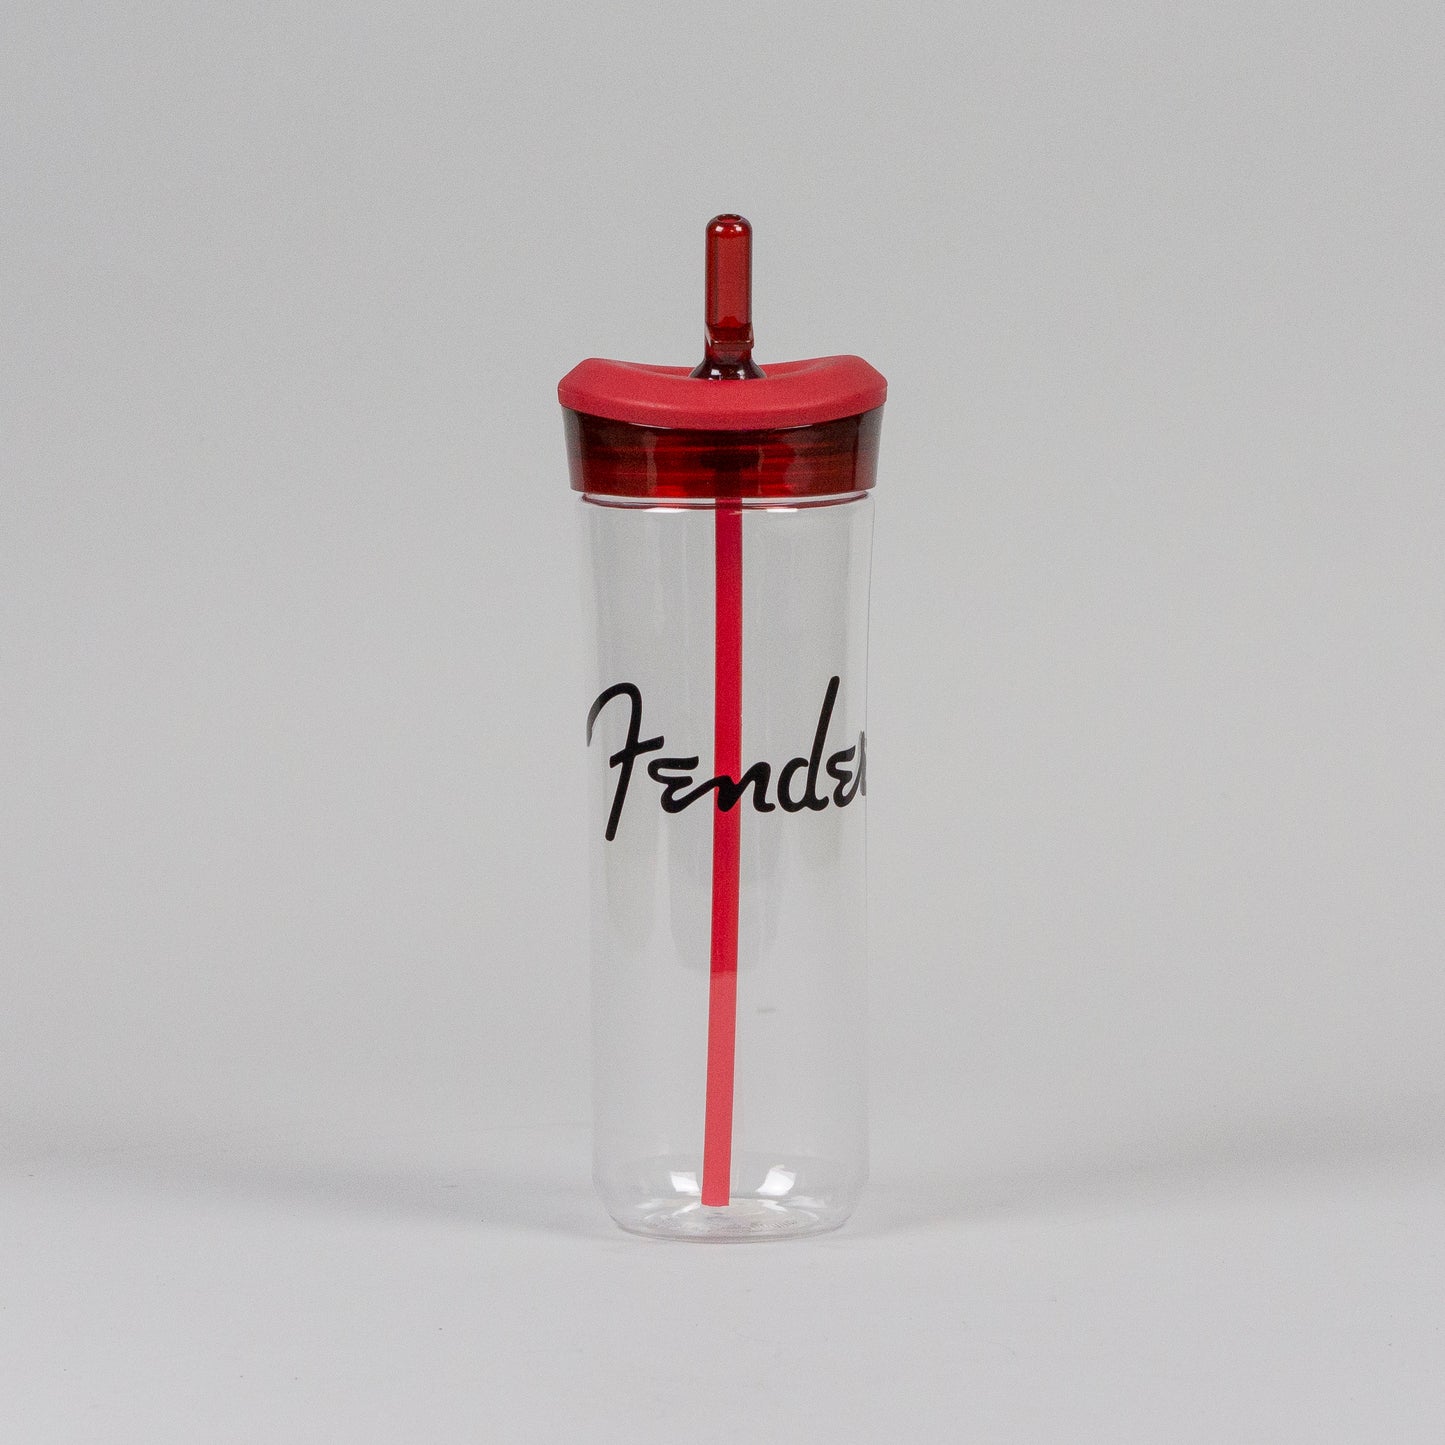 Fender Flip Spout Water Bottle in Red